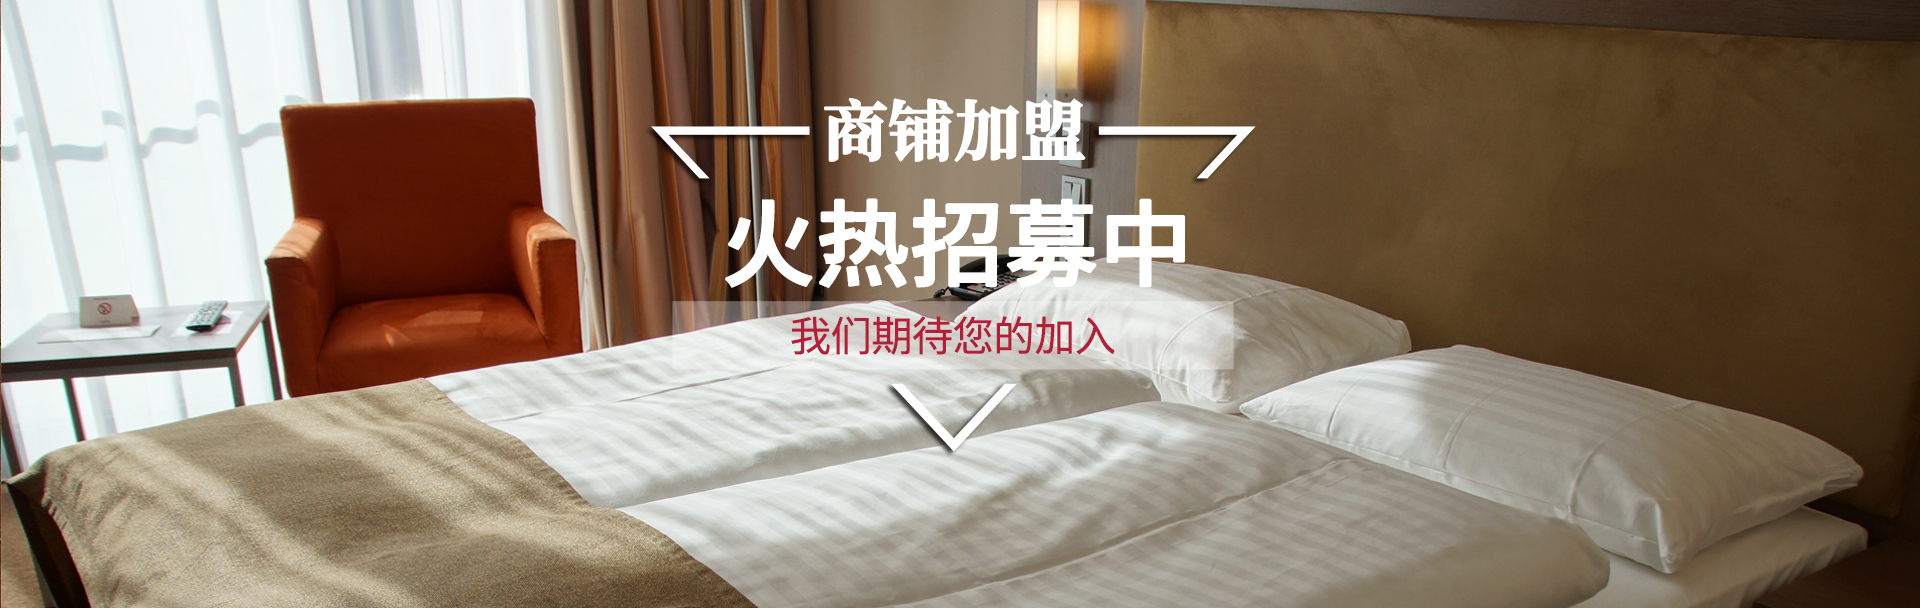 杭州GOG光荣平台酒店管理有限公司